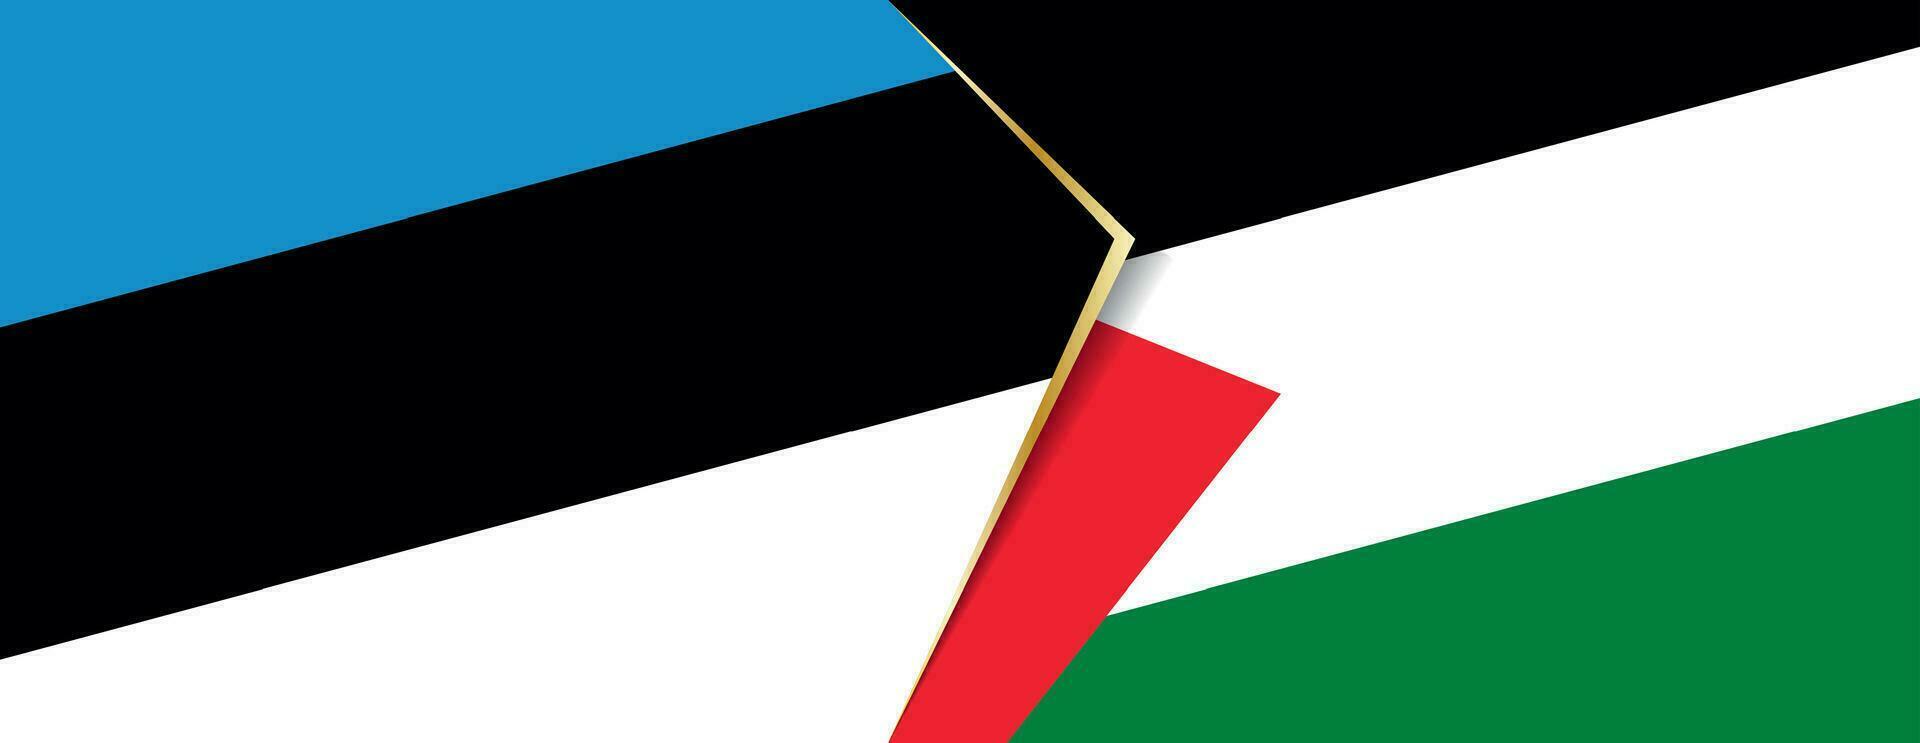 Estonia y Palestina banderas, dos vector banderas